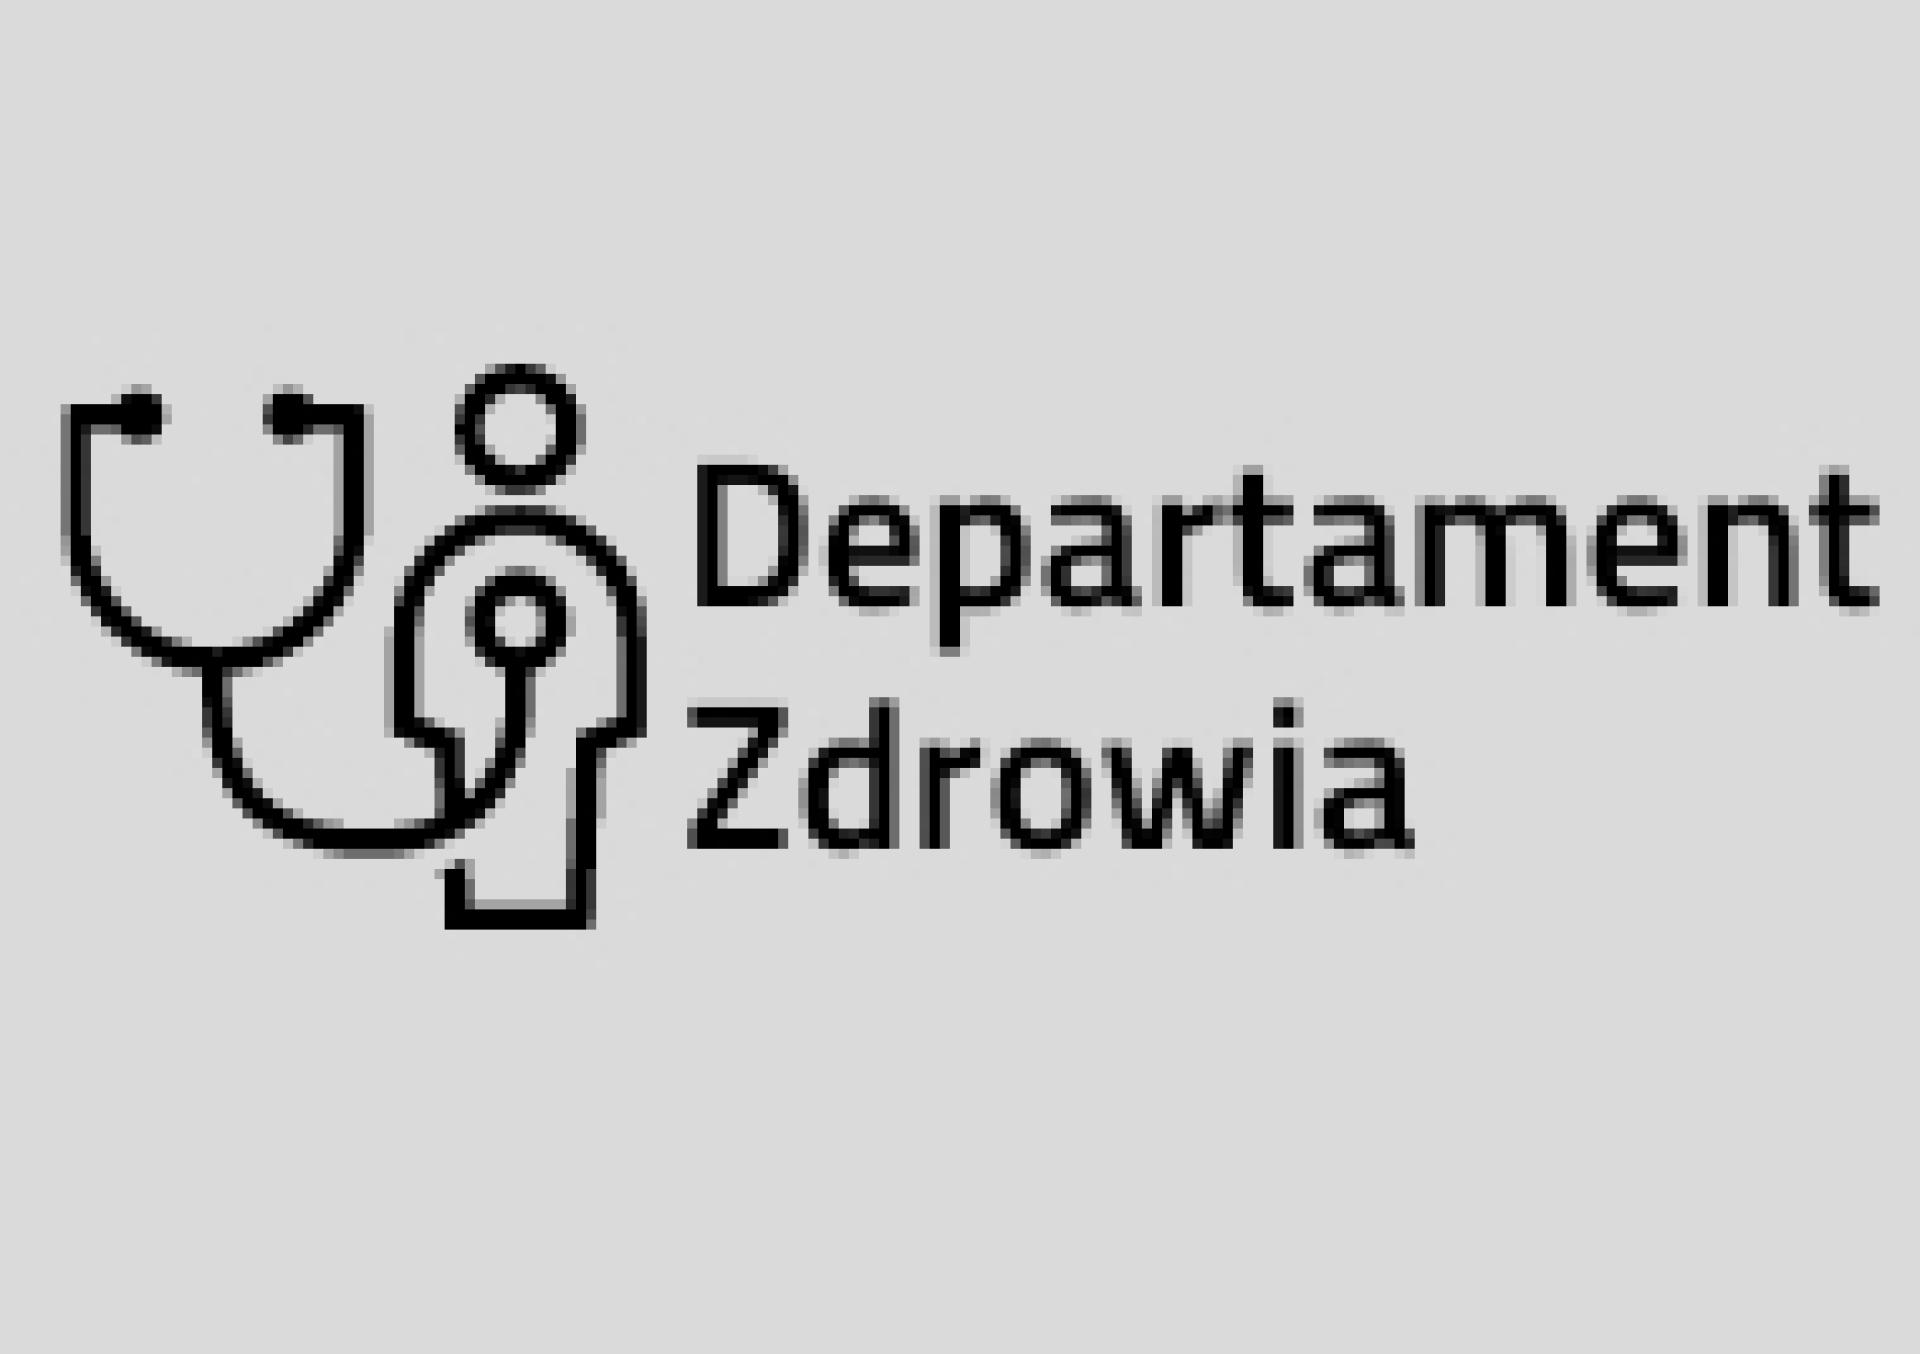 Zmiana nazwy i nowy statut Wielkopolskiego Ośrodka Reumatologicznego Samodzielnego Publicznego Specjalistycznego Zespołu Opieki Zdrowotnej w Śremie - zobacz więcej